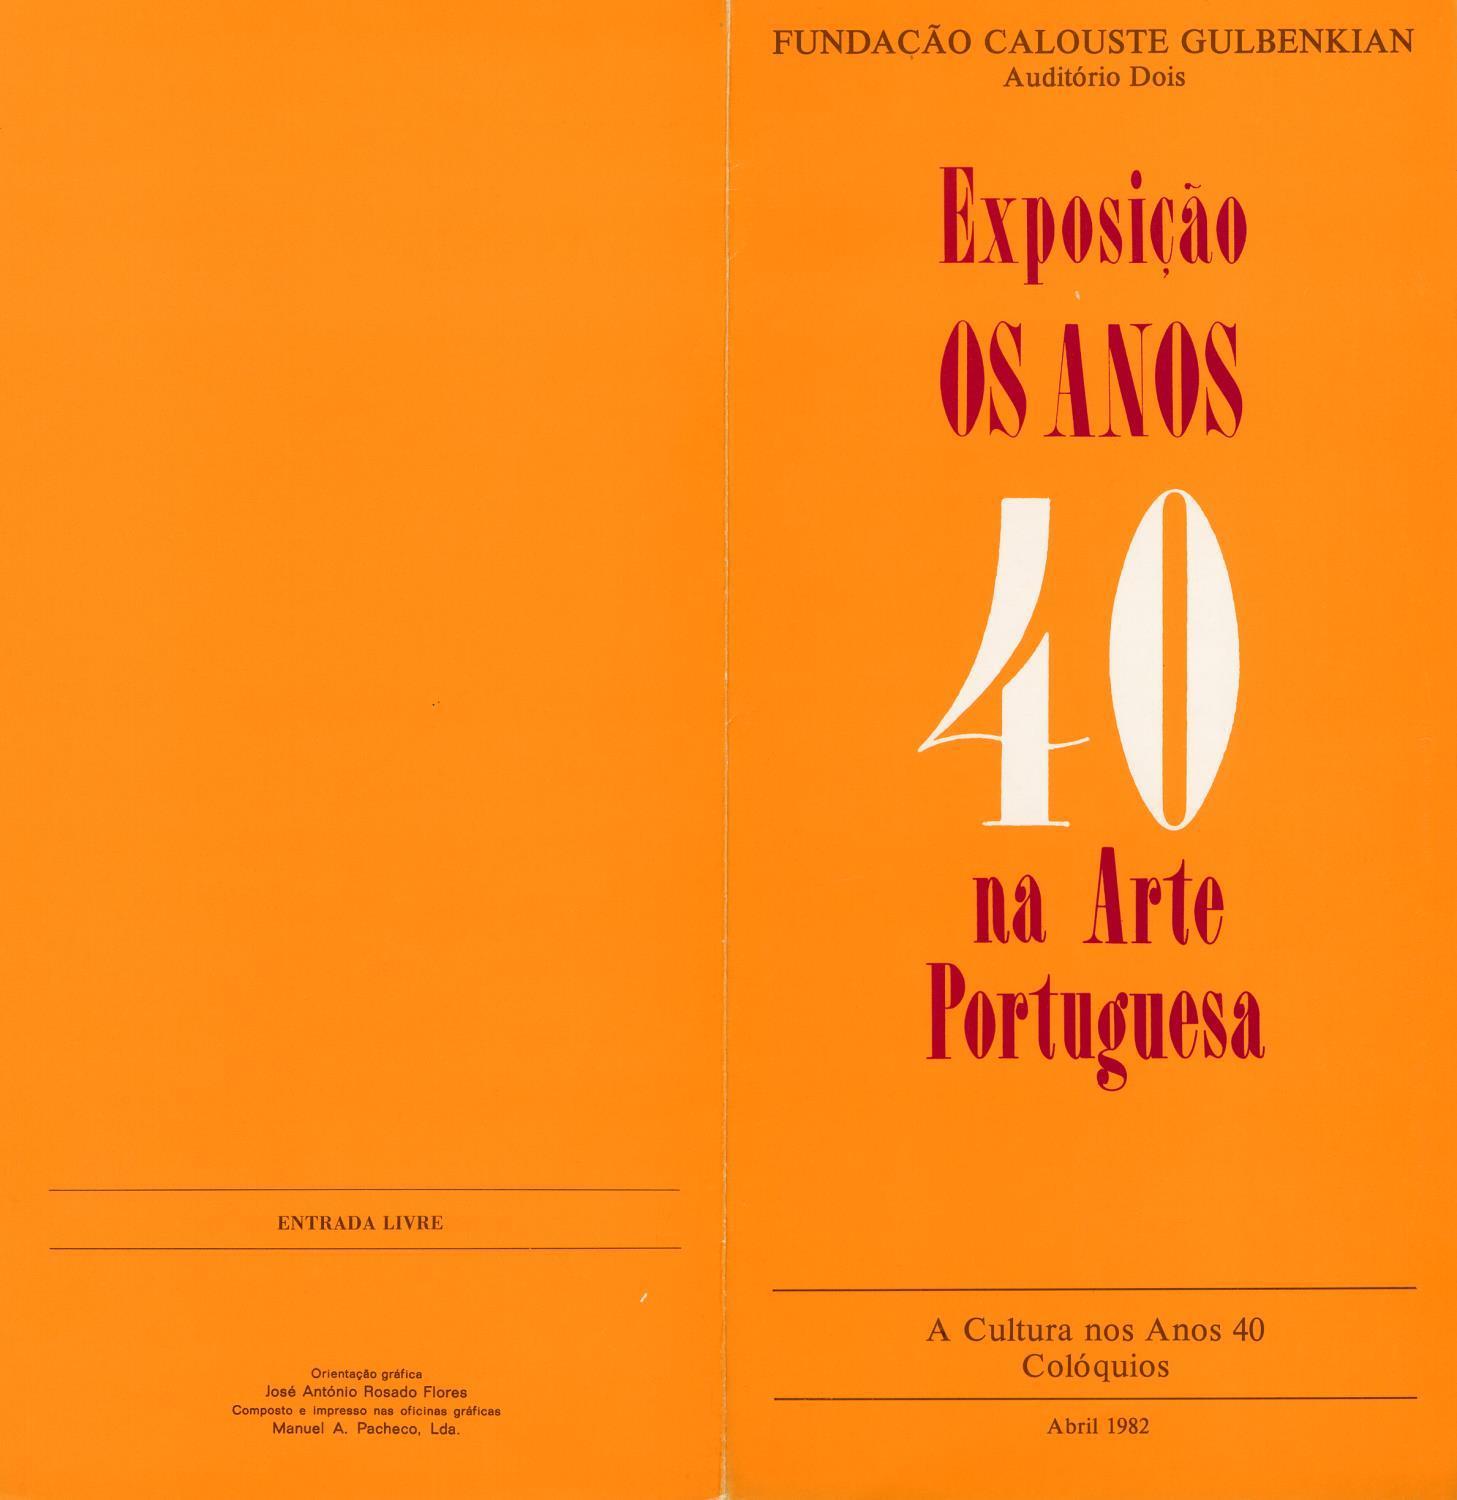 Exposição Os Anos 40 na Arte Portuguesa. A Cultura nos Anos 40. Colóquios